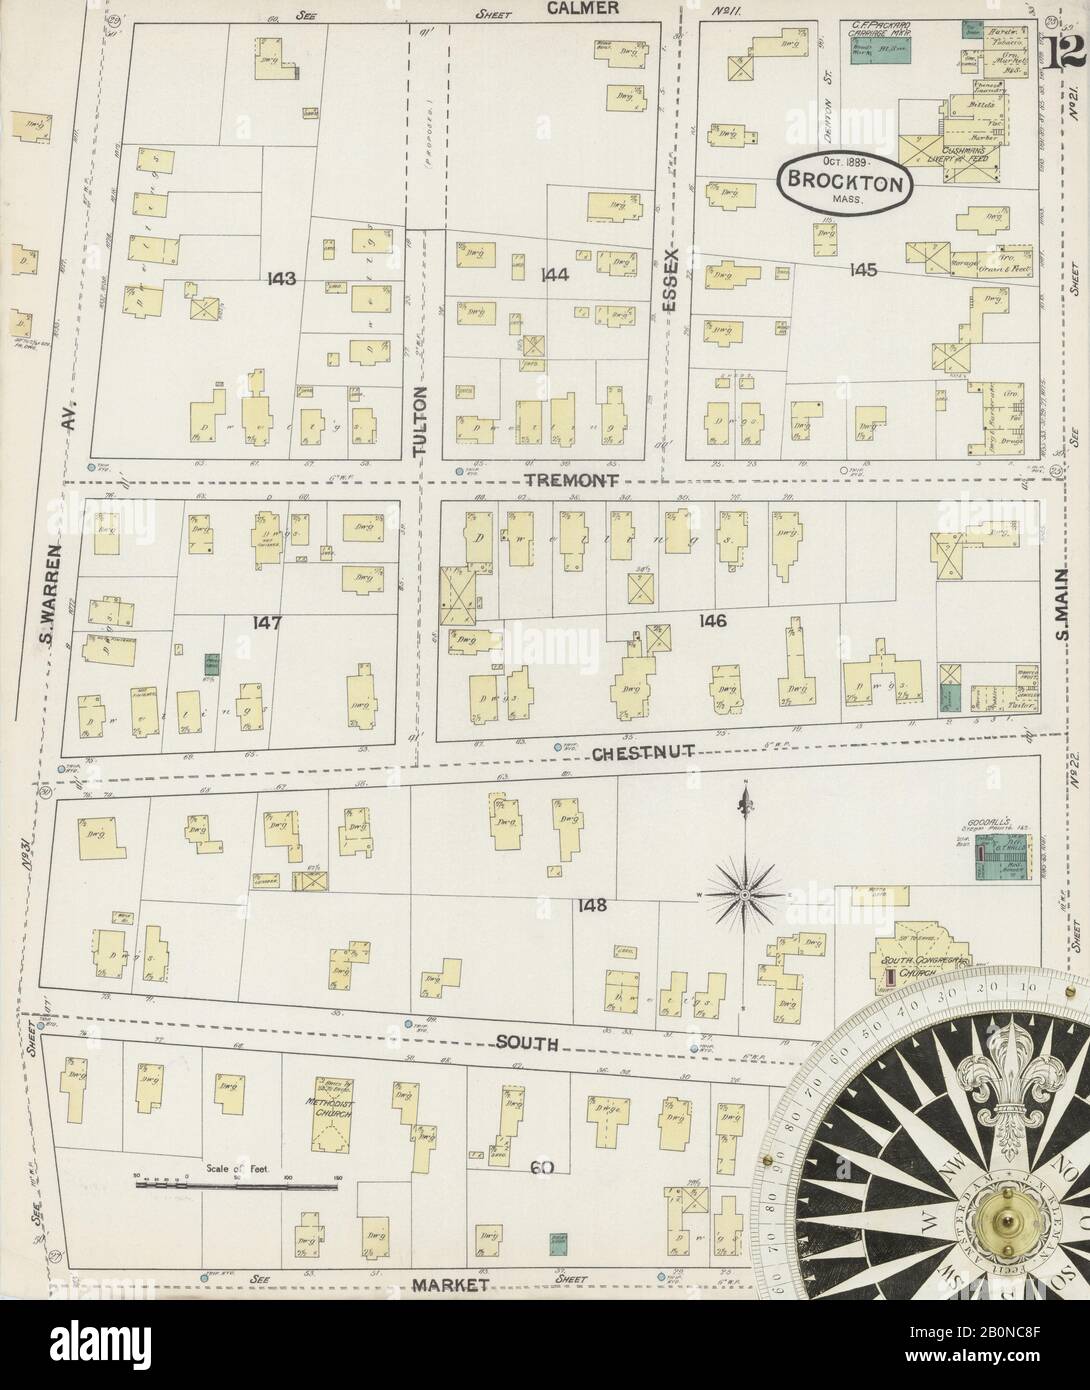 Image 12 De La Carte D'Assurance-Incendie Sanborn De Brockton, Comté De Plymouth, Massachusetts. Oct 1889. 31 feuille(s), Amérique, plan de rue avec compas du XIXe siècle Banque D'Images